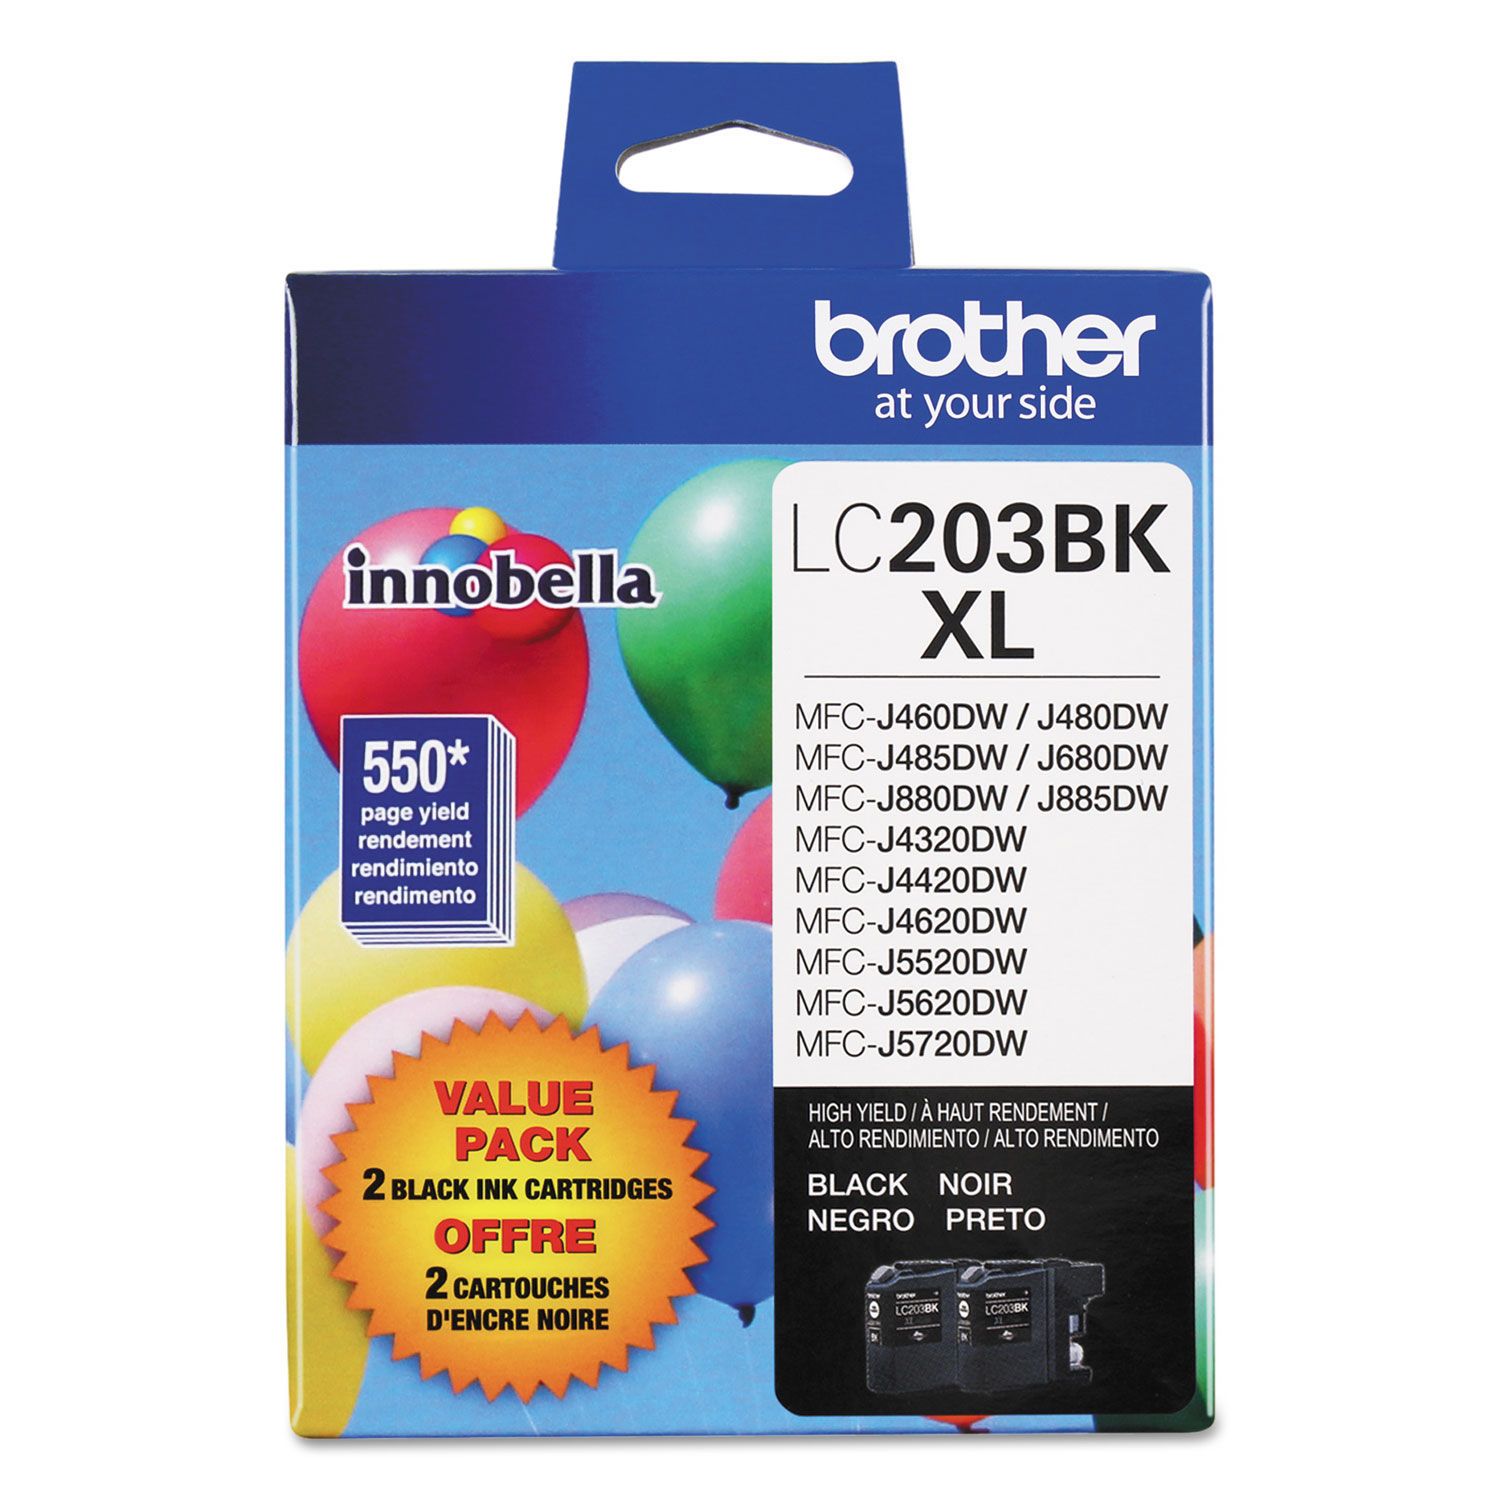 Absolute Toner Brother LC2032PKS Original Genuine OEM Black Ink Cartridge Brother Ink Cartridges